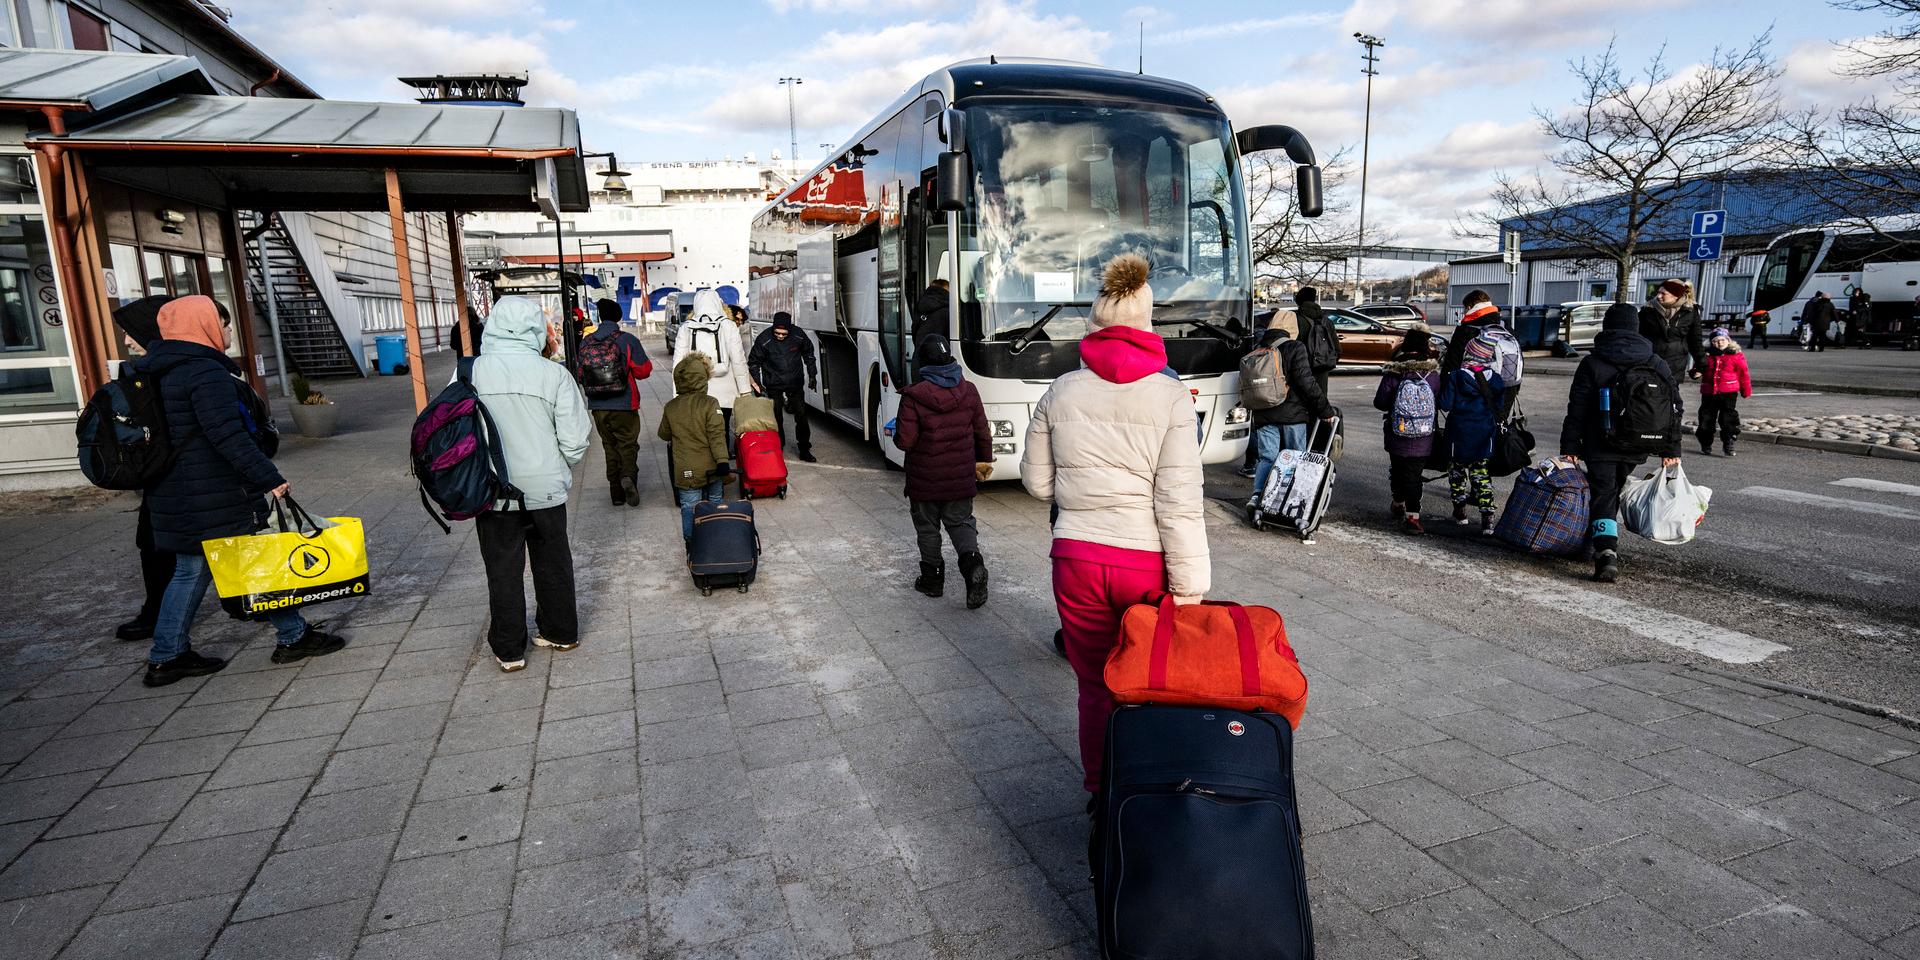 Flera som tagit sig till Sverige har kommit via hamnen i Karlskrona. Sedan får de åka buss vidare till andra orter i Sverige därifrån.